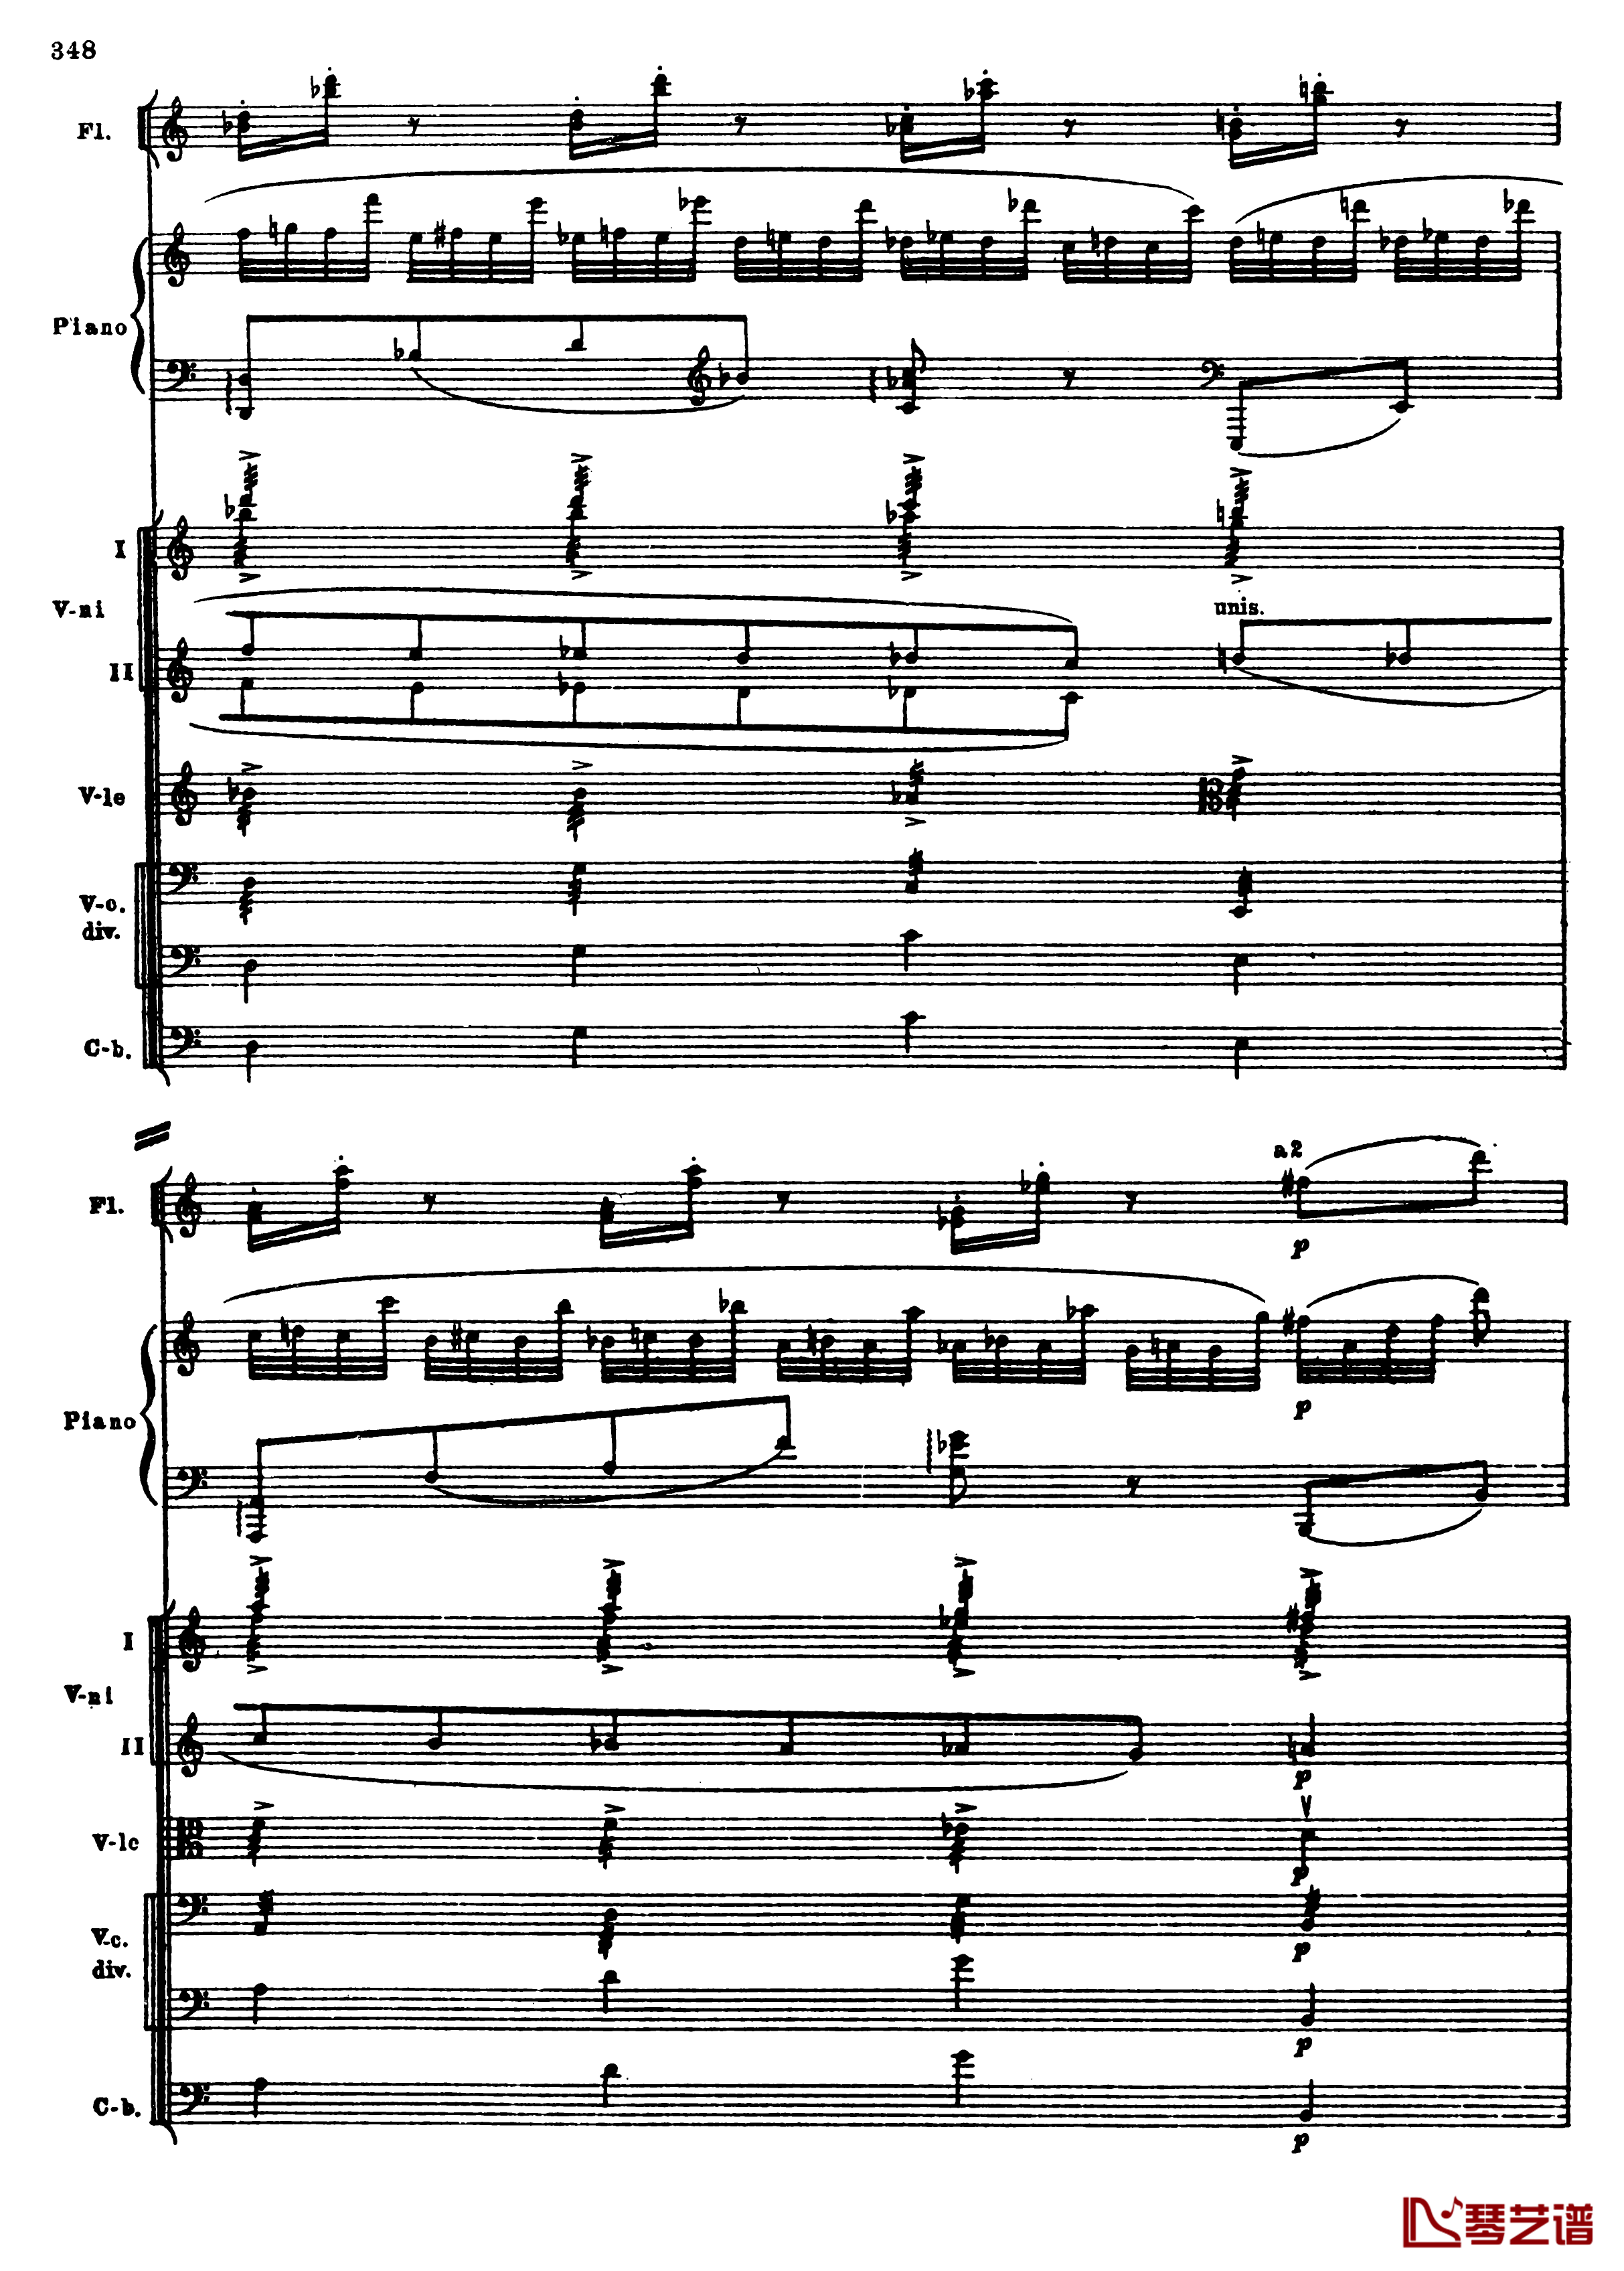 普罗科菲耶夫第三钢琴协奏曲钢琴谱-总谱-普罗科非耶夫80